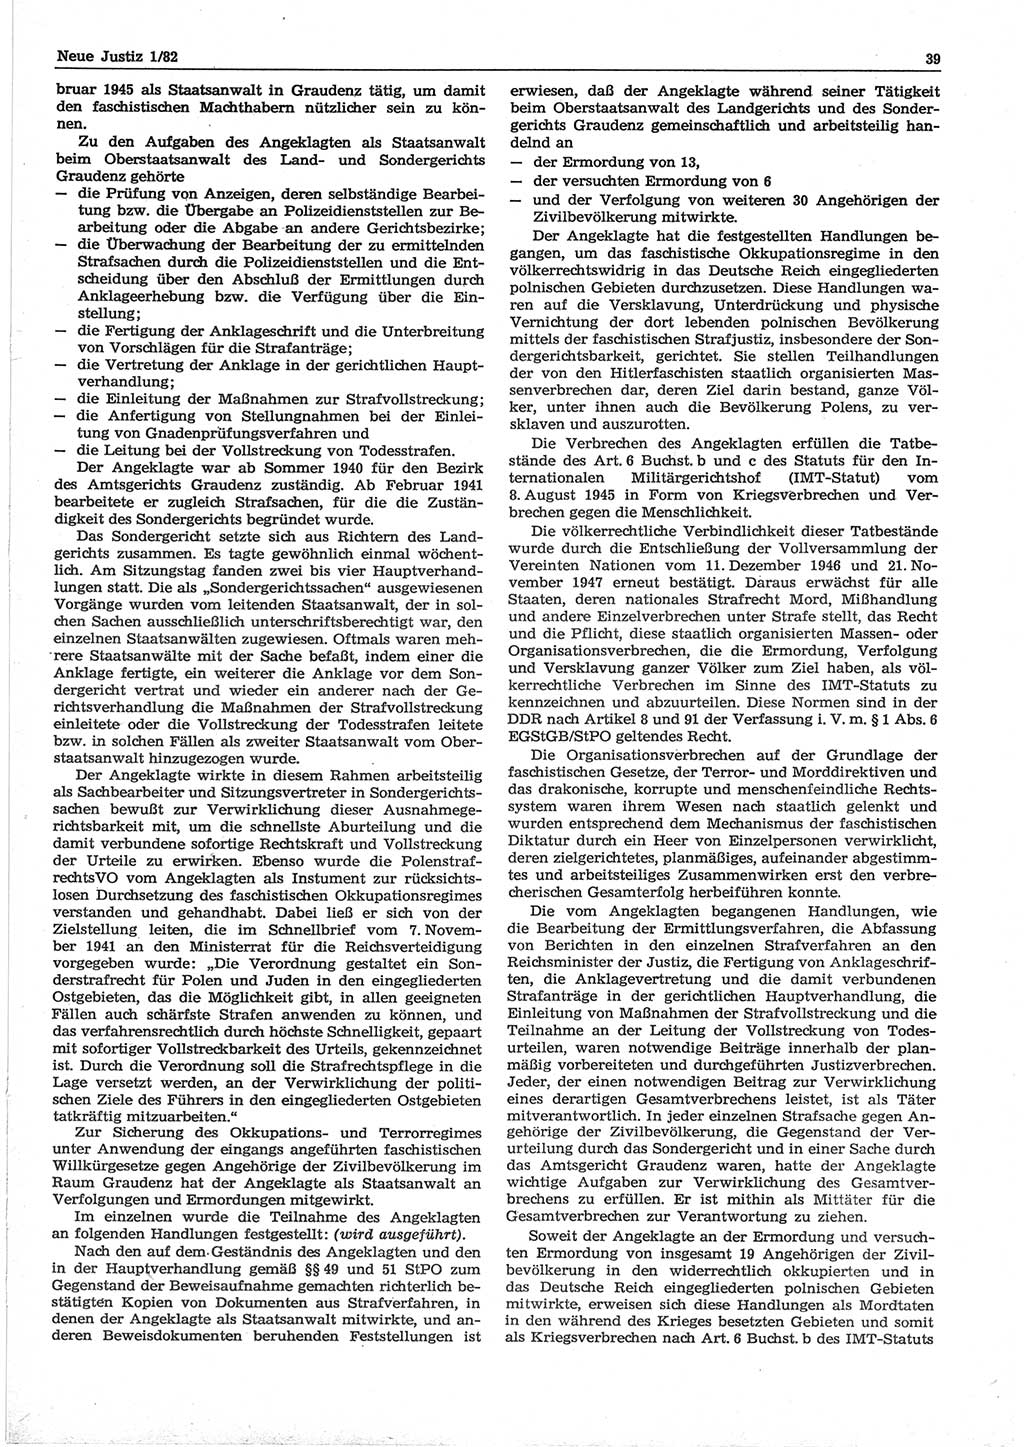 Neue Justiz (NJ), Zeitschrift für sozialistisches Recht und Gesetzlichkeit [Deutsche Demokratische Republik (DDR)], 36. Jahrgang 1982, Seite 39 (NJ DDR 1982, S. 39)